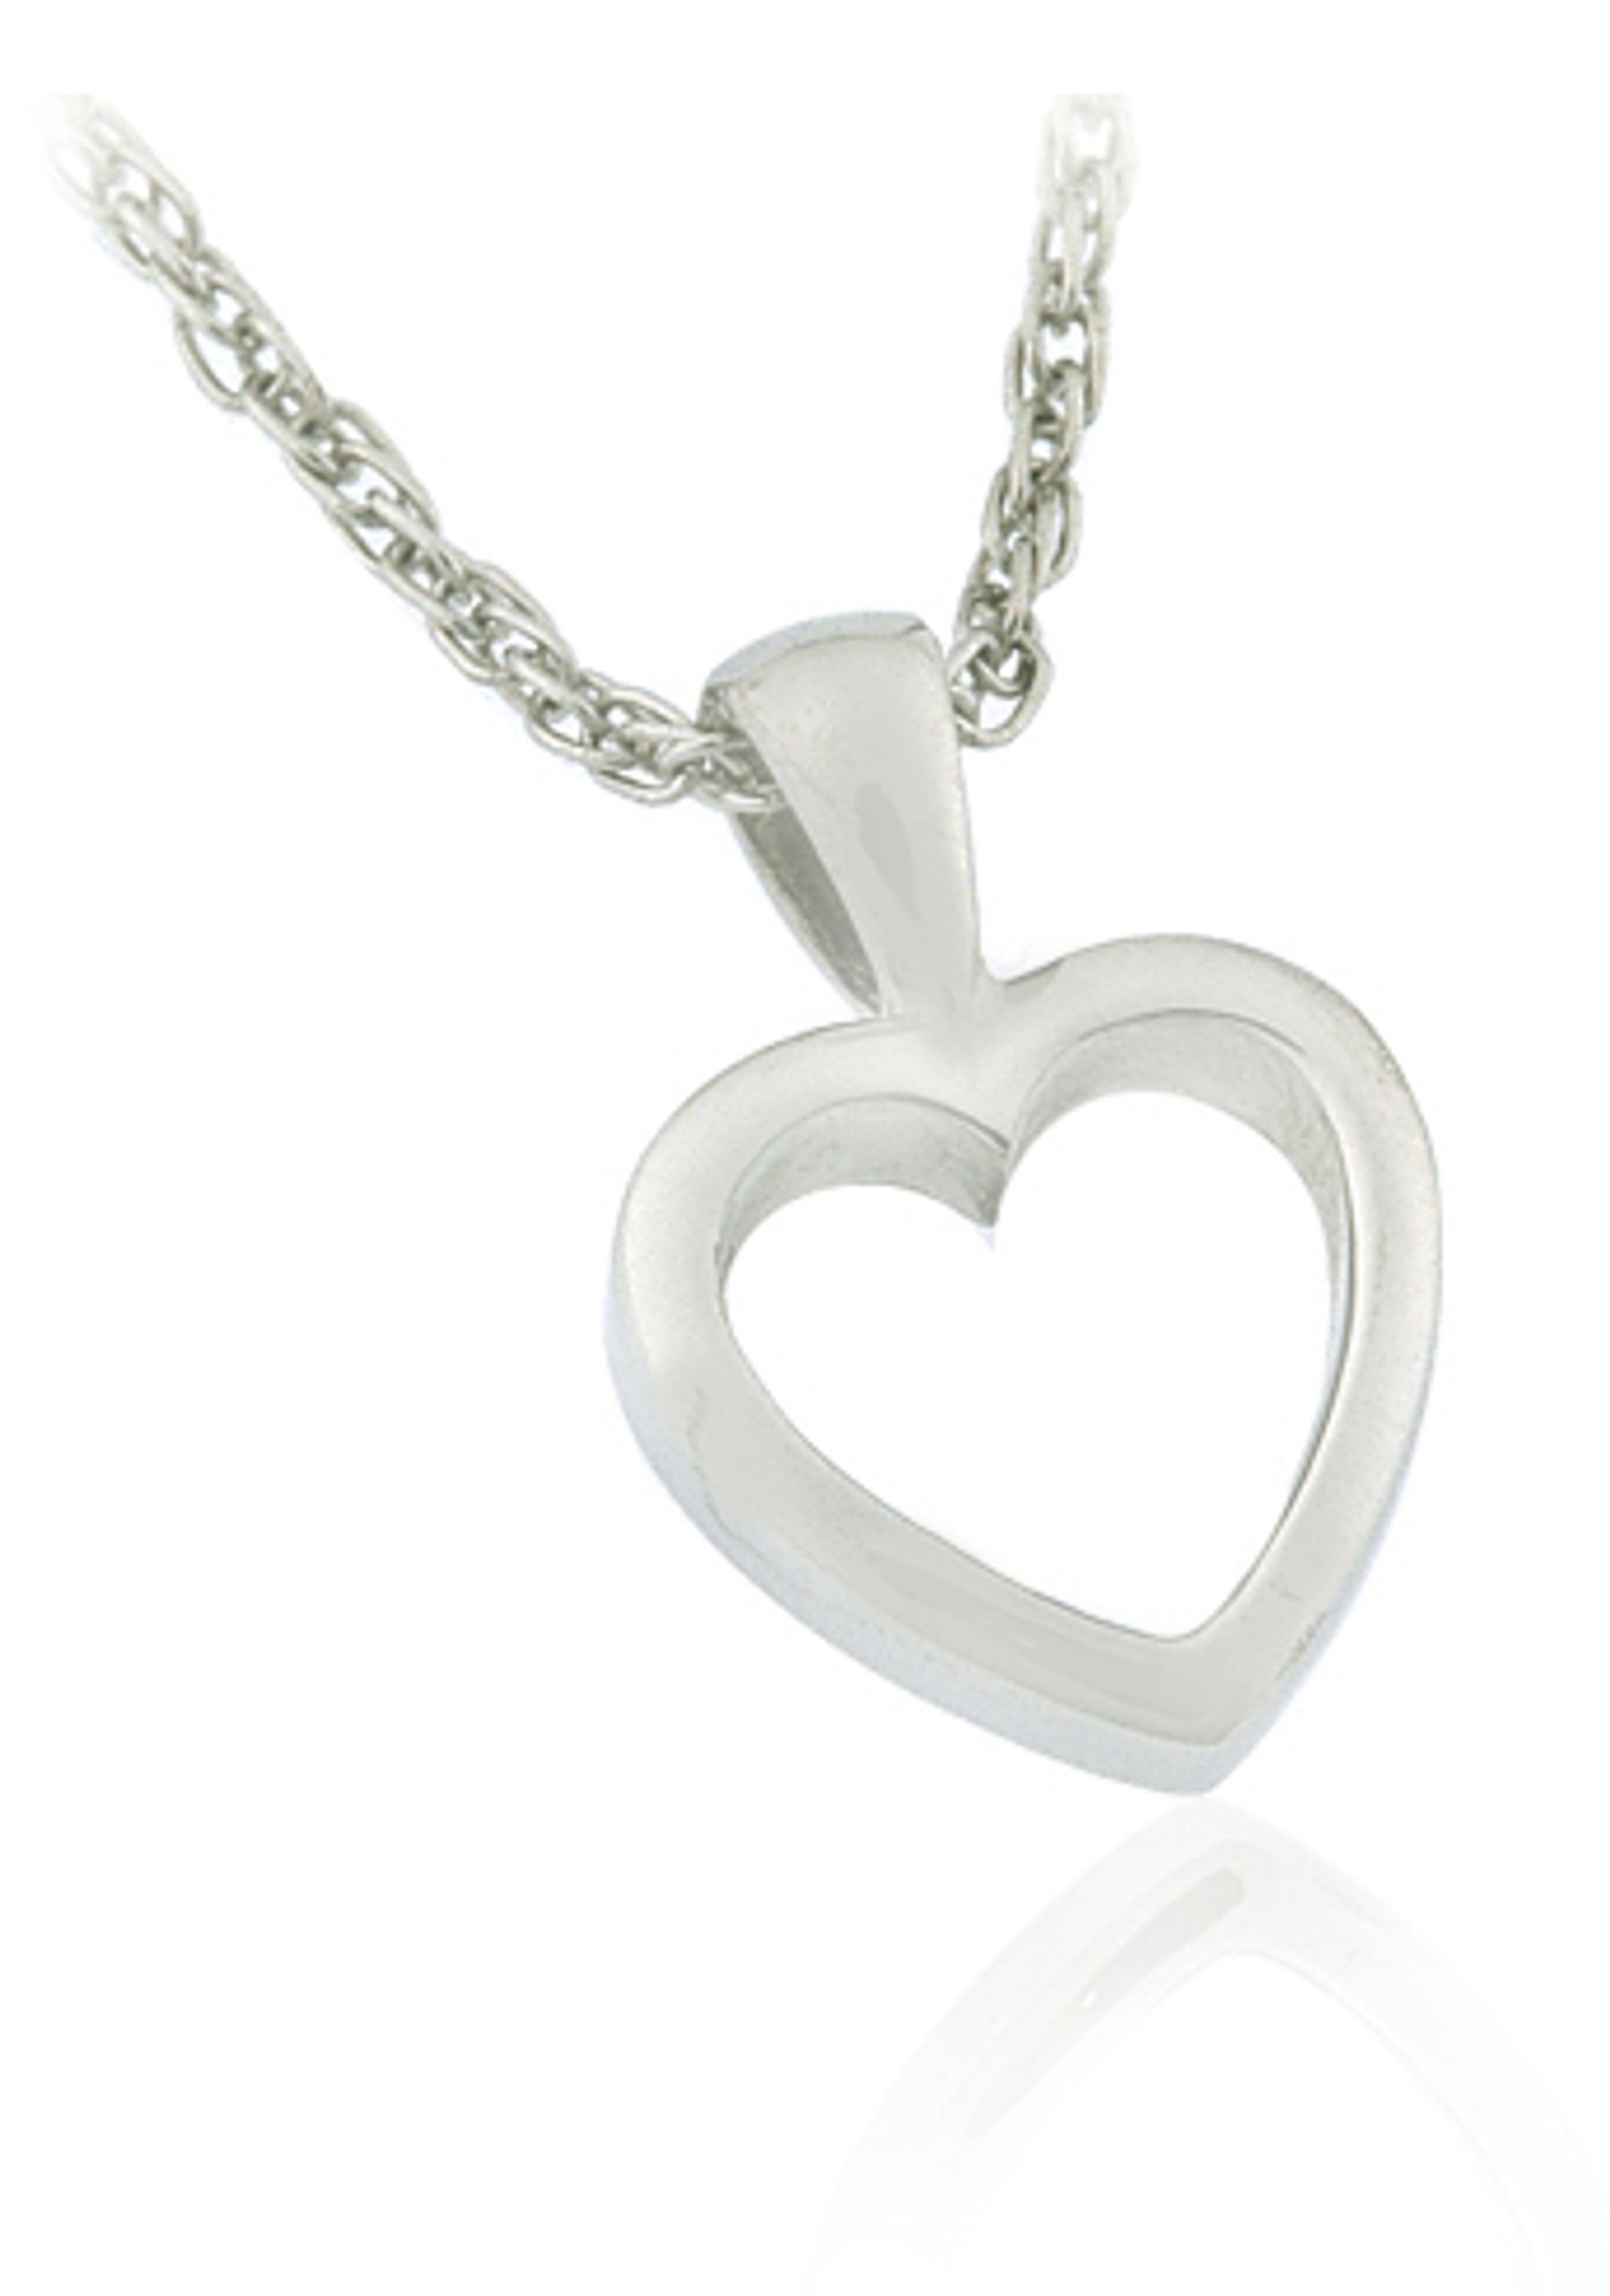 Platinum heart pendant with pendant platinum chain